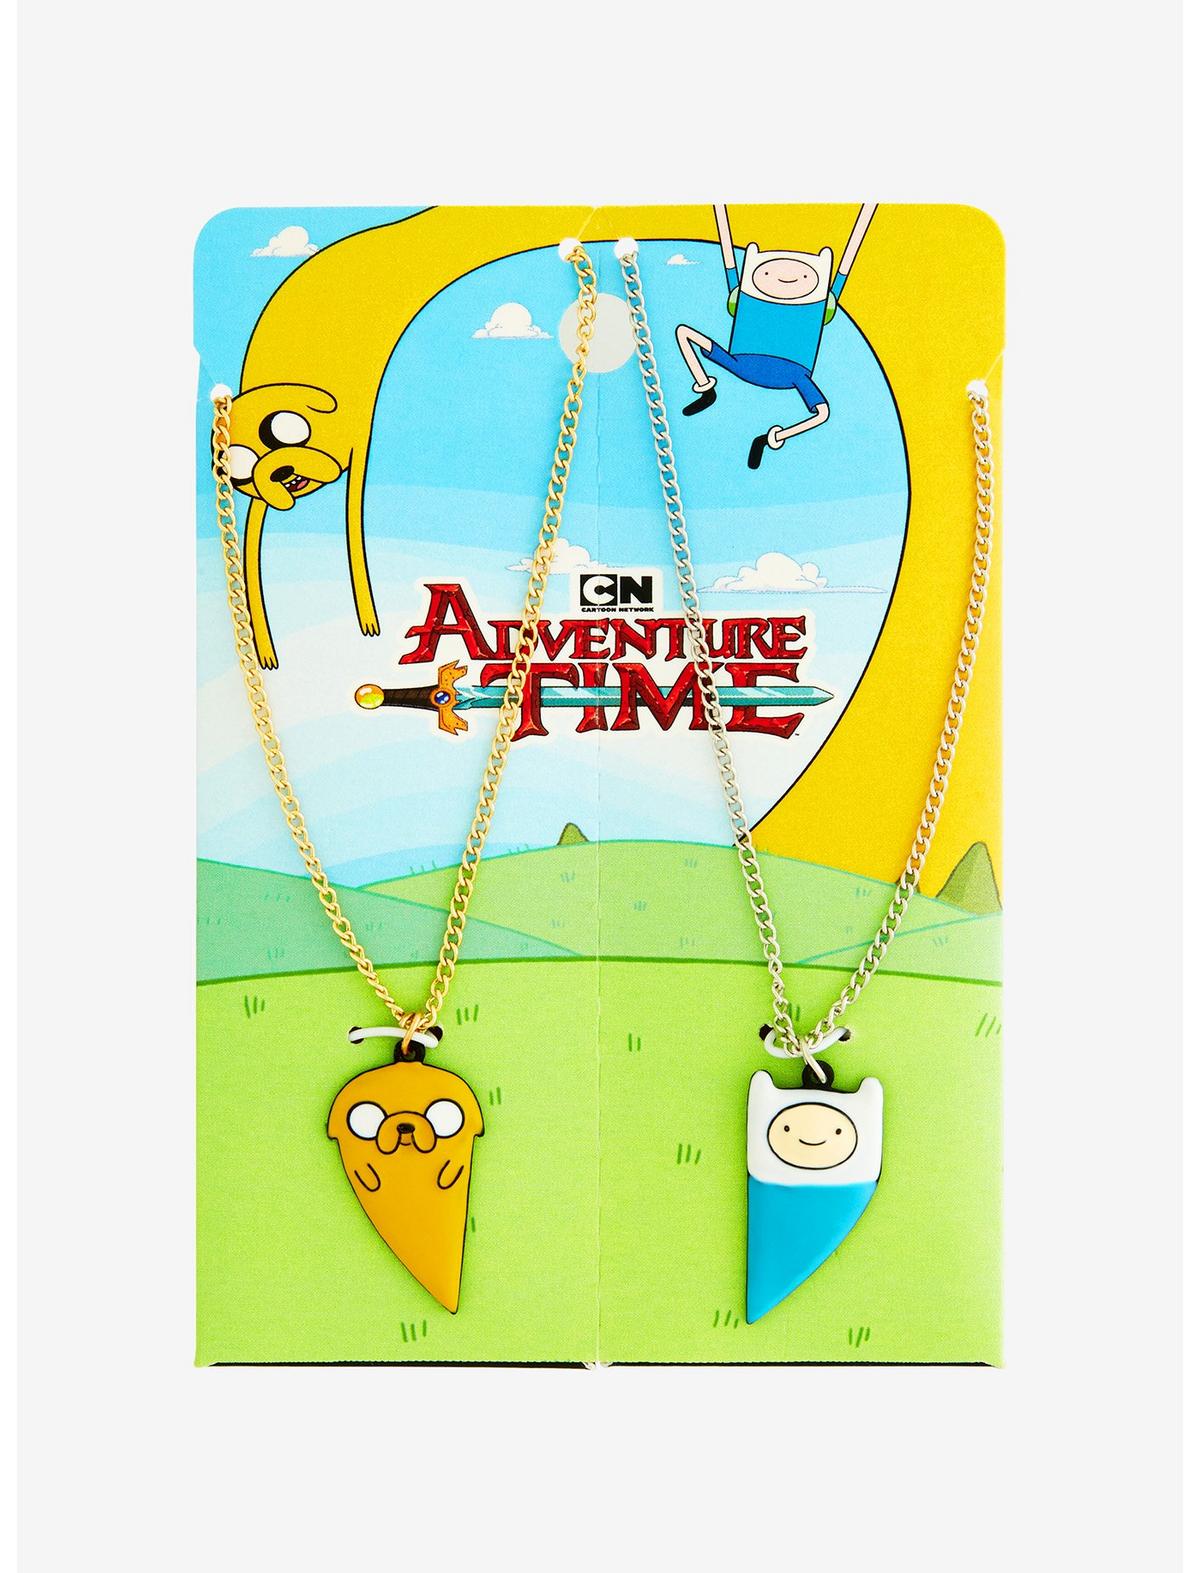 Adventure Time Finn & Jake Best Friend Necklace Set